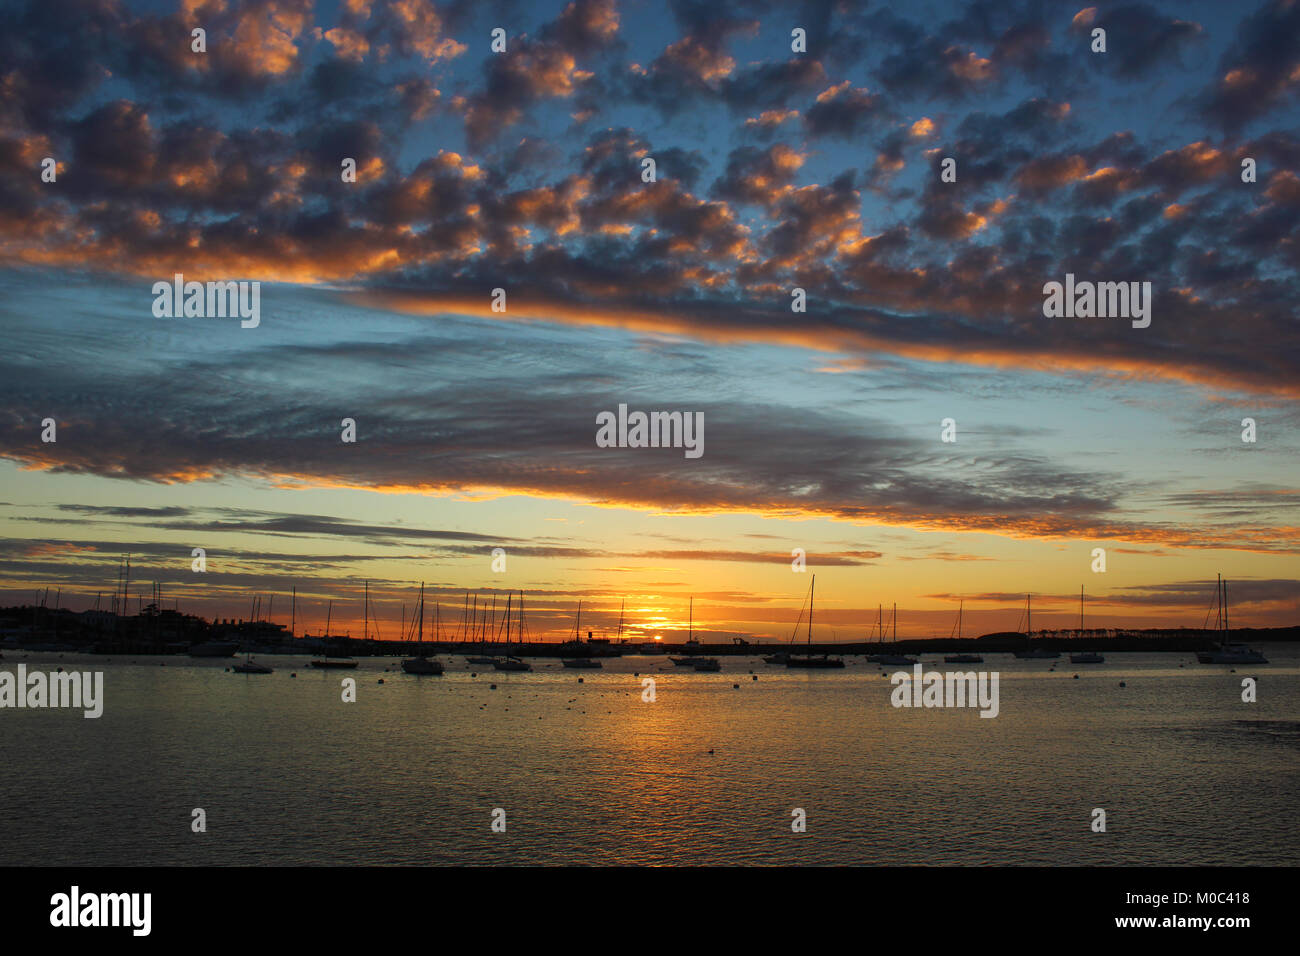 Lovely sunset at Punta del Este, Uruguay. Stock Photo